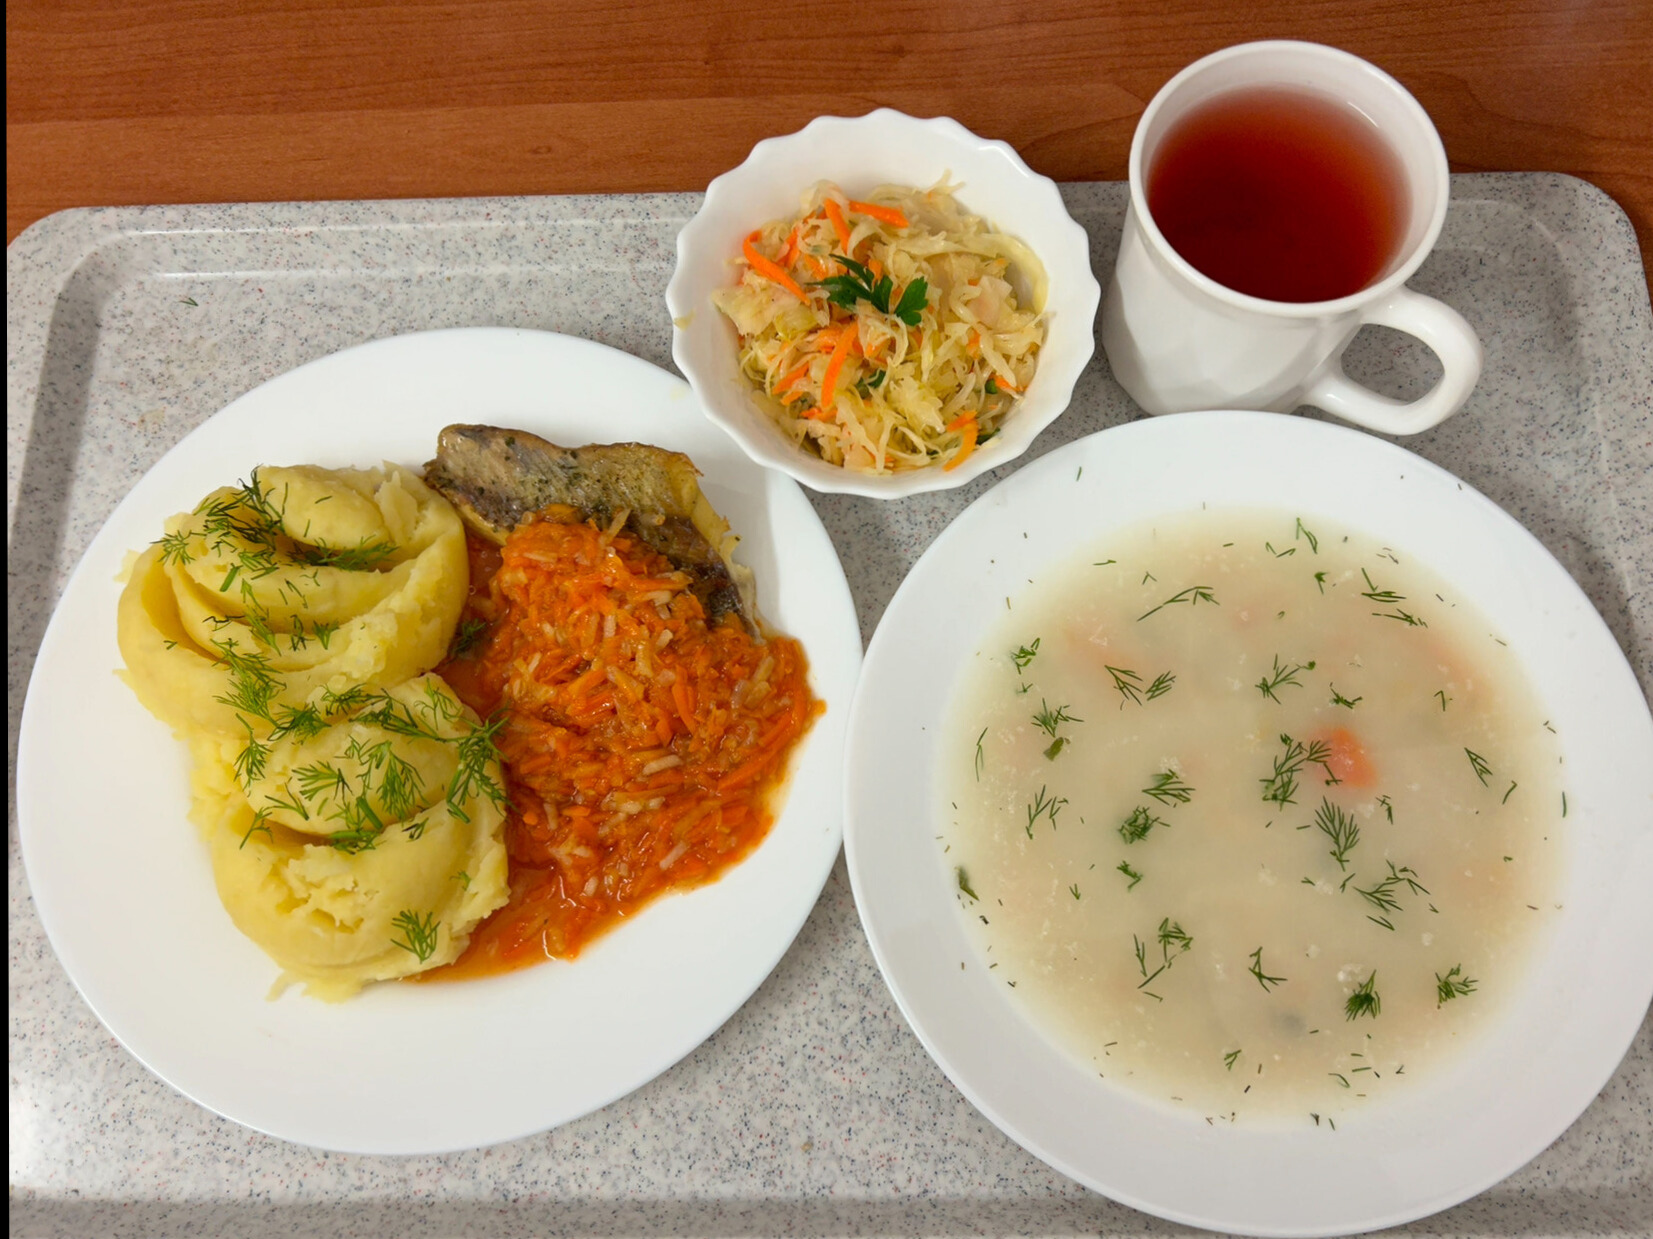 Na zdjęciu znajduje się: Kalafiorowa z ryżem, Ziemniaki z tłuszczem, Ryba pieczona (dorsz), Surówka z kapusty kiszonej z olejem, Warzywa po grecku, Kompot owocowy